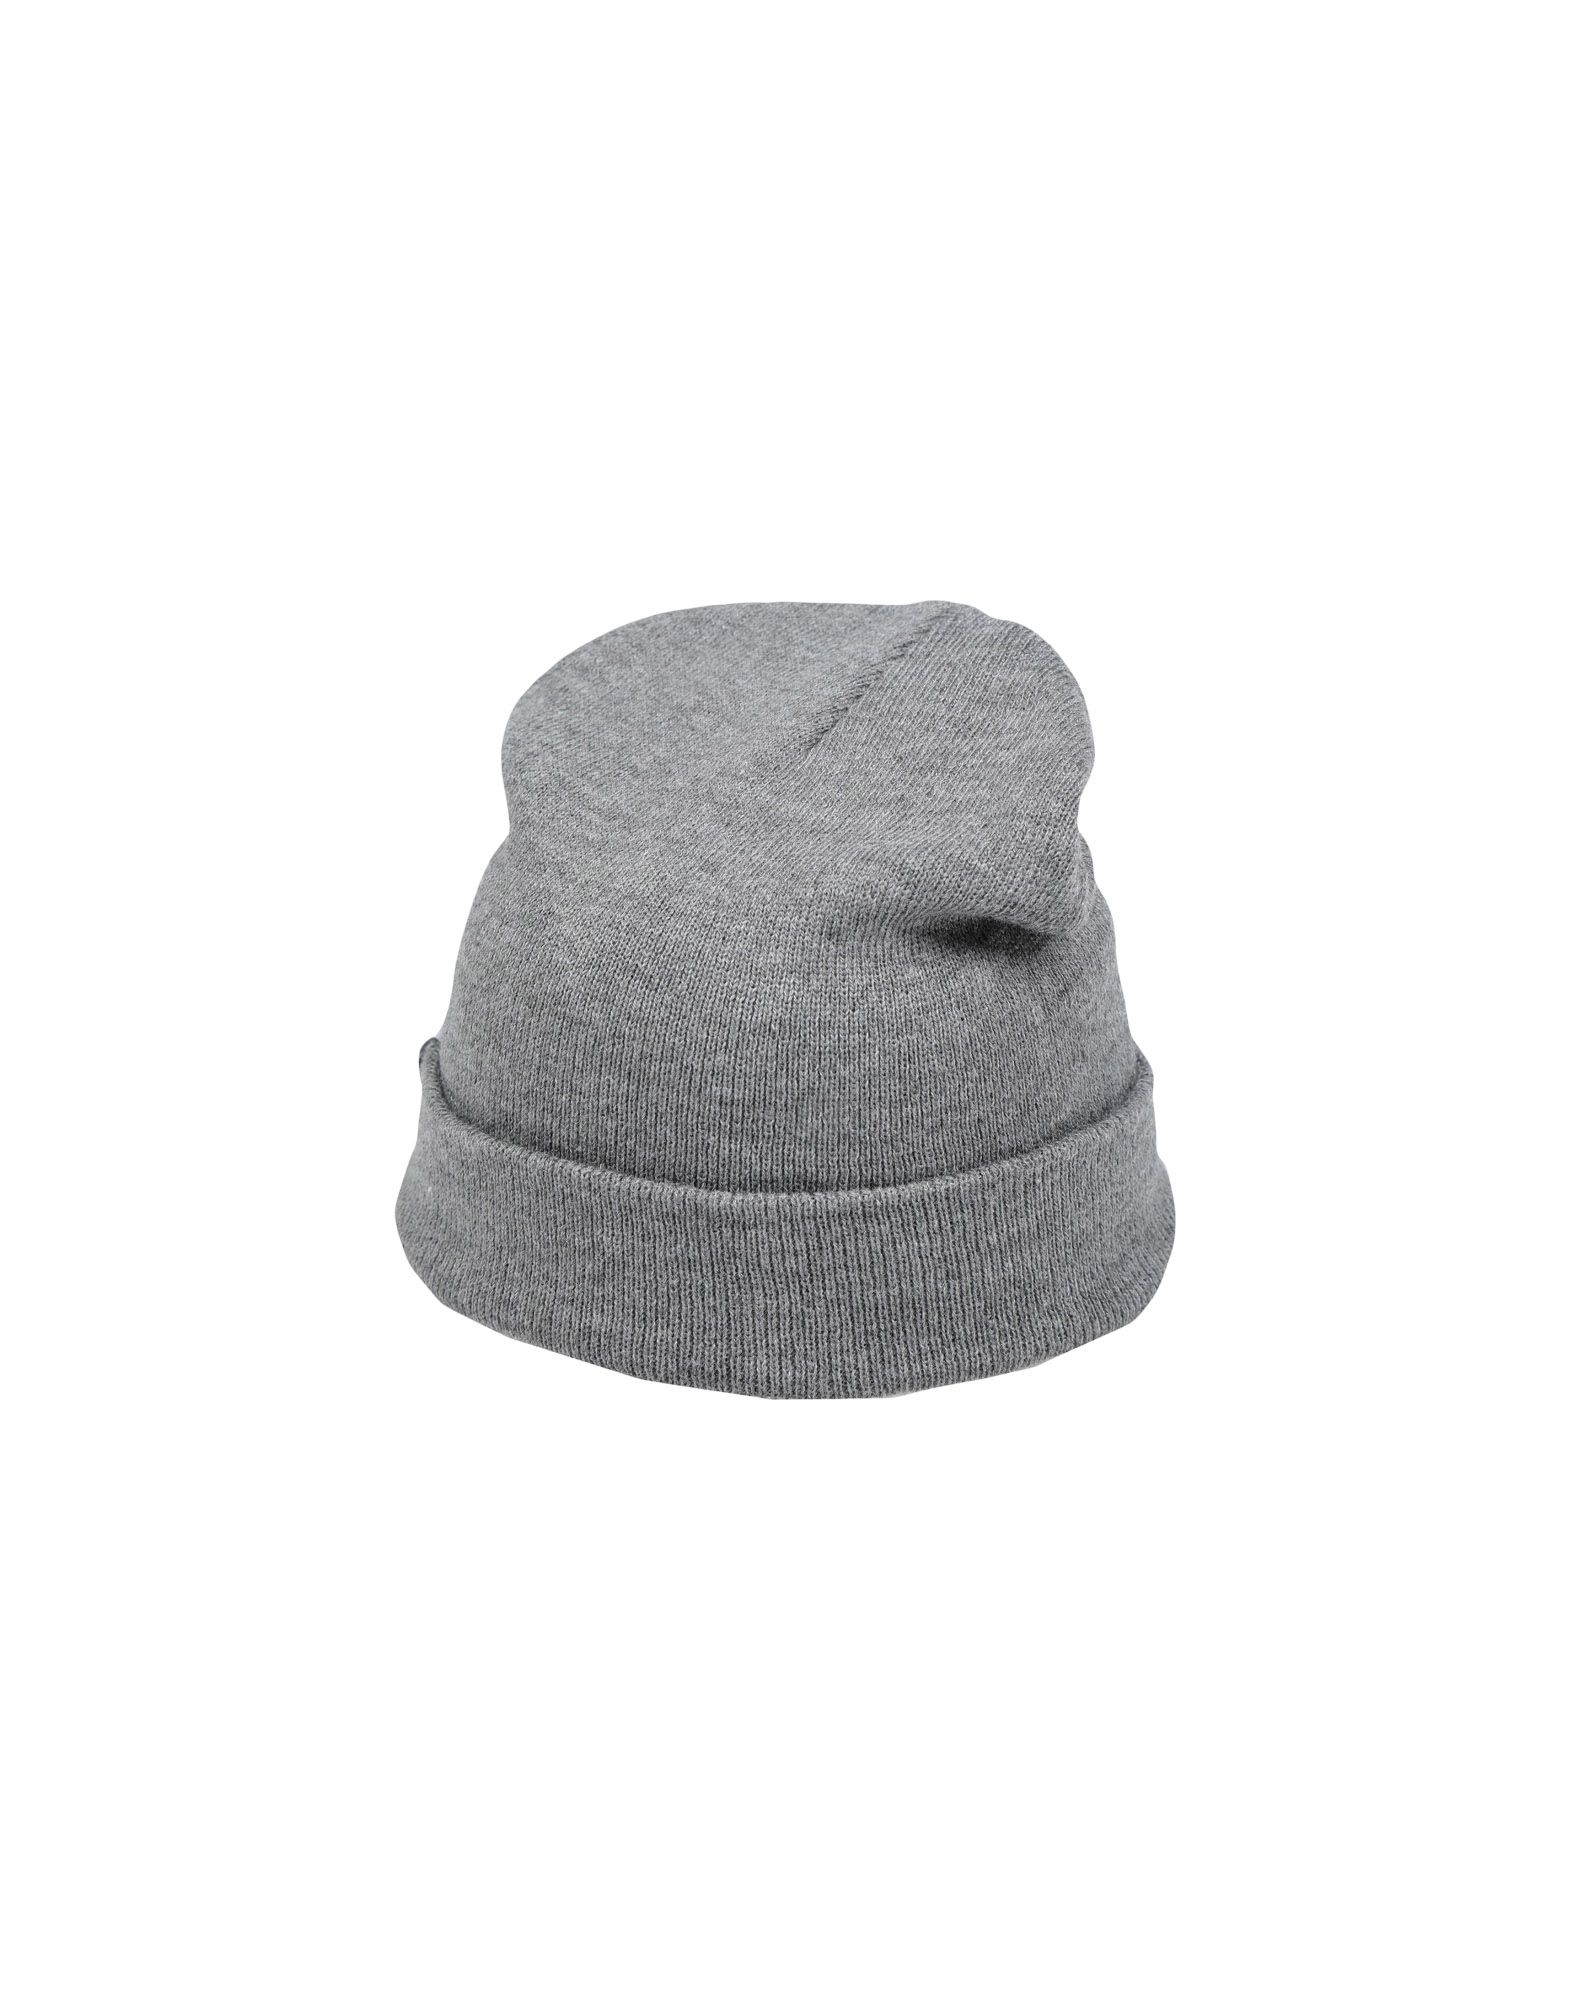 《送料無料》HERSCHEL SUPPLY CO. メンズ 帽子 グレー one size アクリル 100%